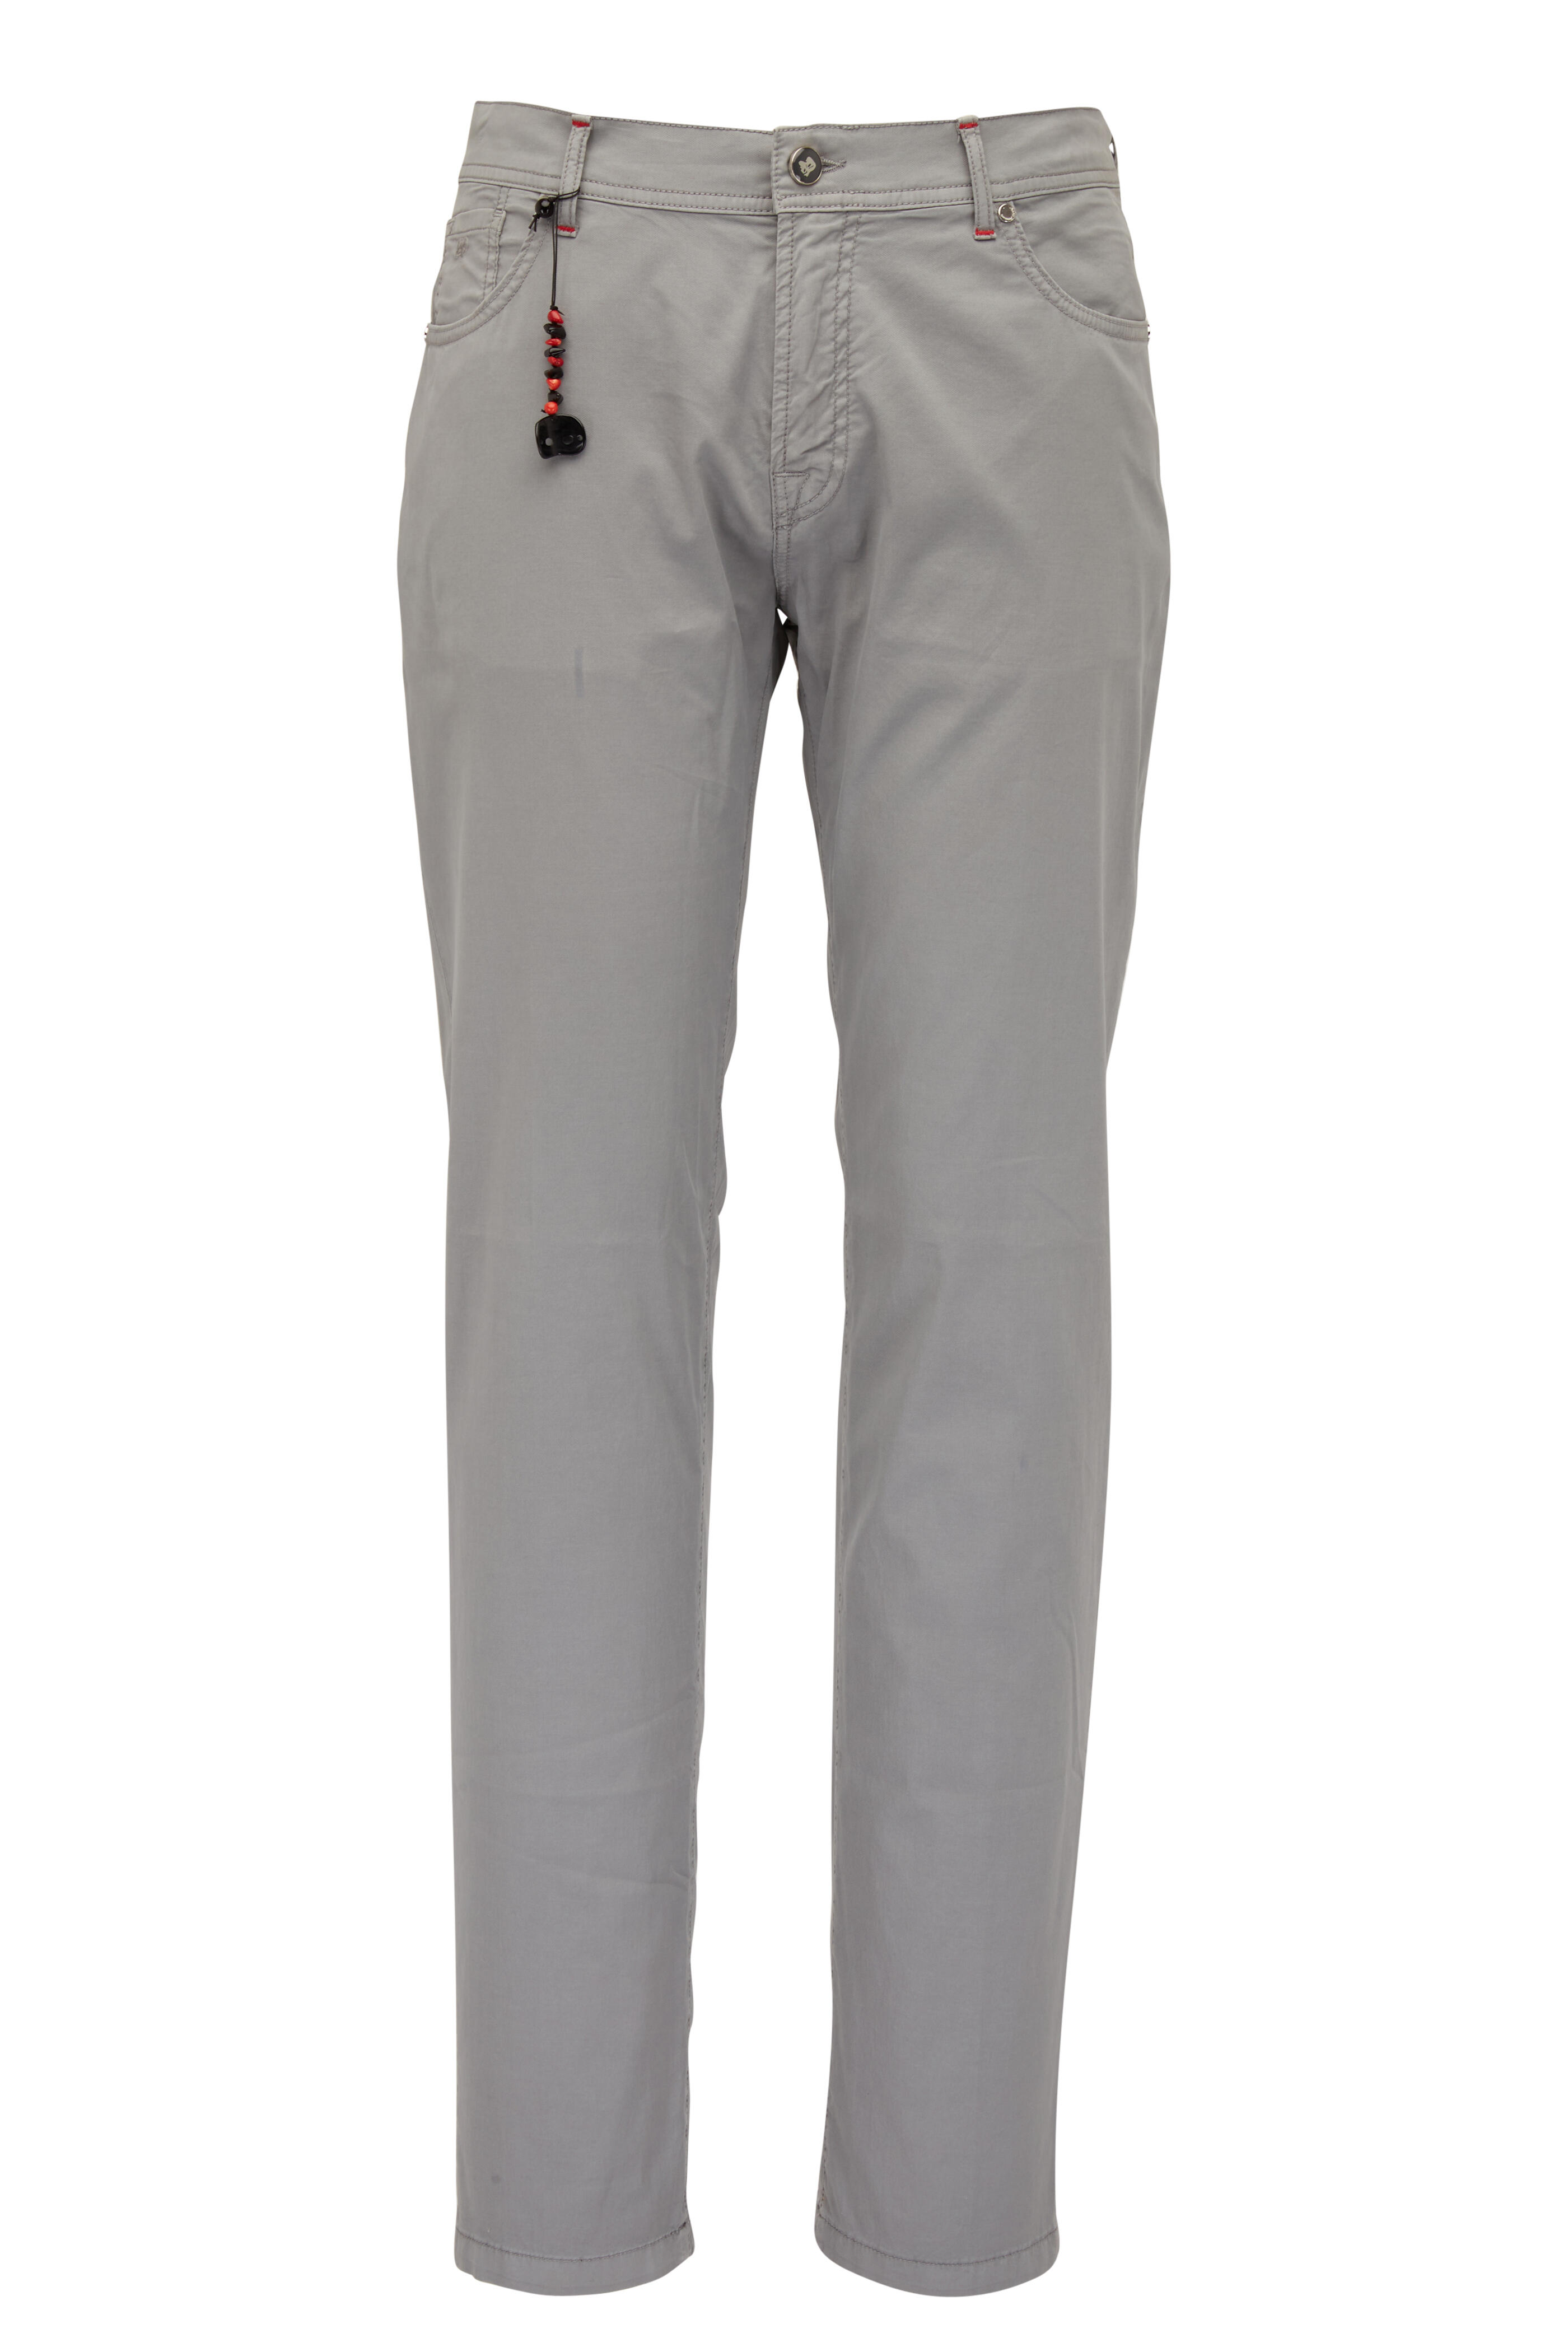 Marco Pescarolo - Gray Cotton & Silk Five Pocket Pant